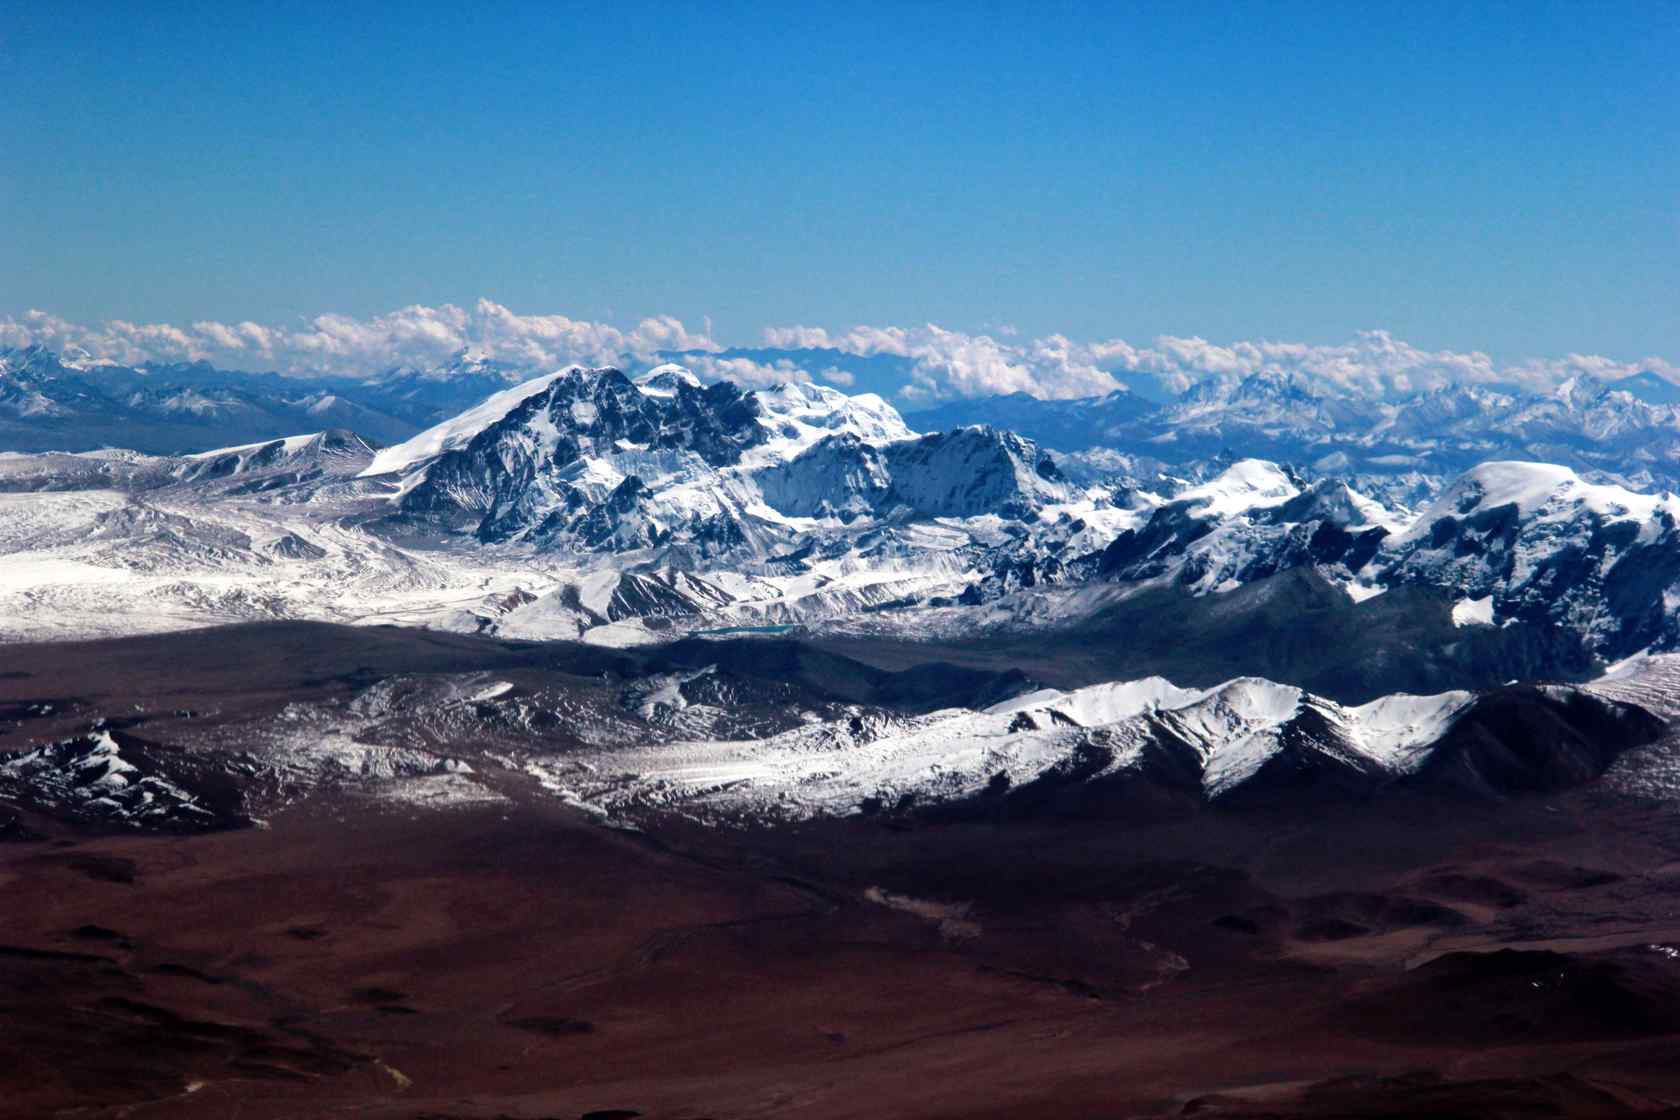 壮观的珠穆朗玛峰风景壁纸图片下载